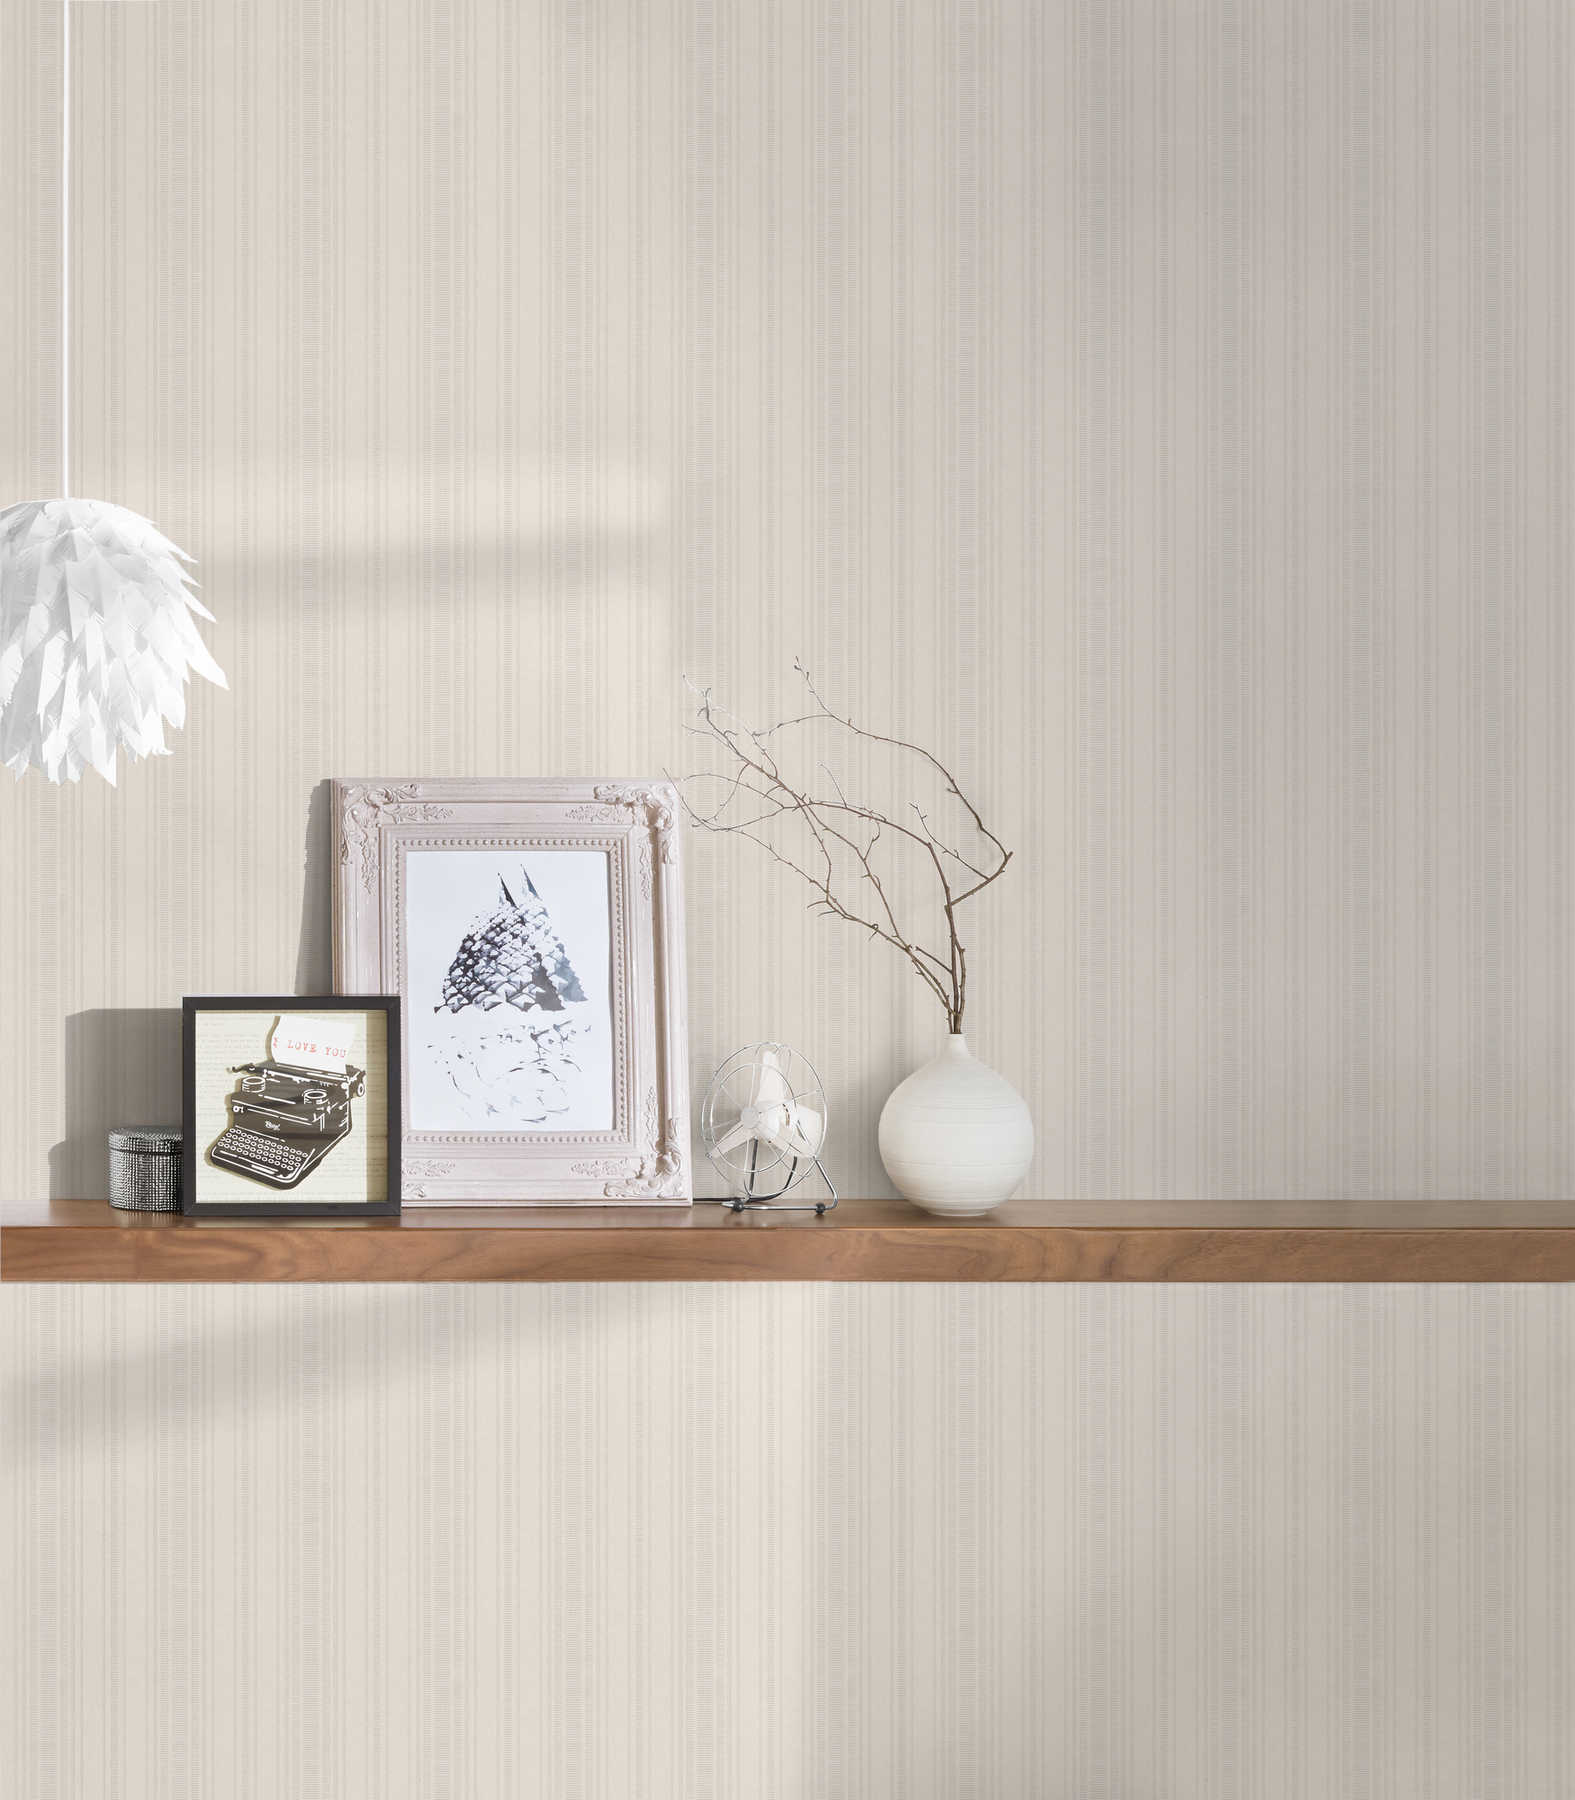             Cream beige wallpaper with stripe pattern & texture design
        